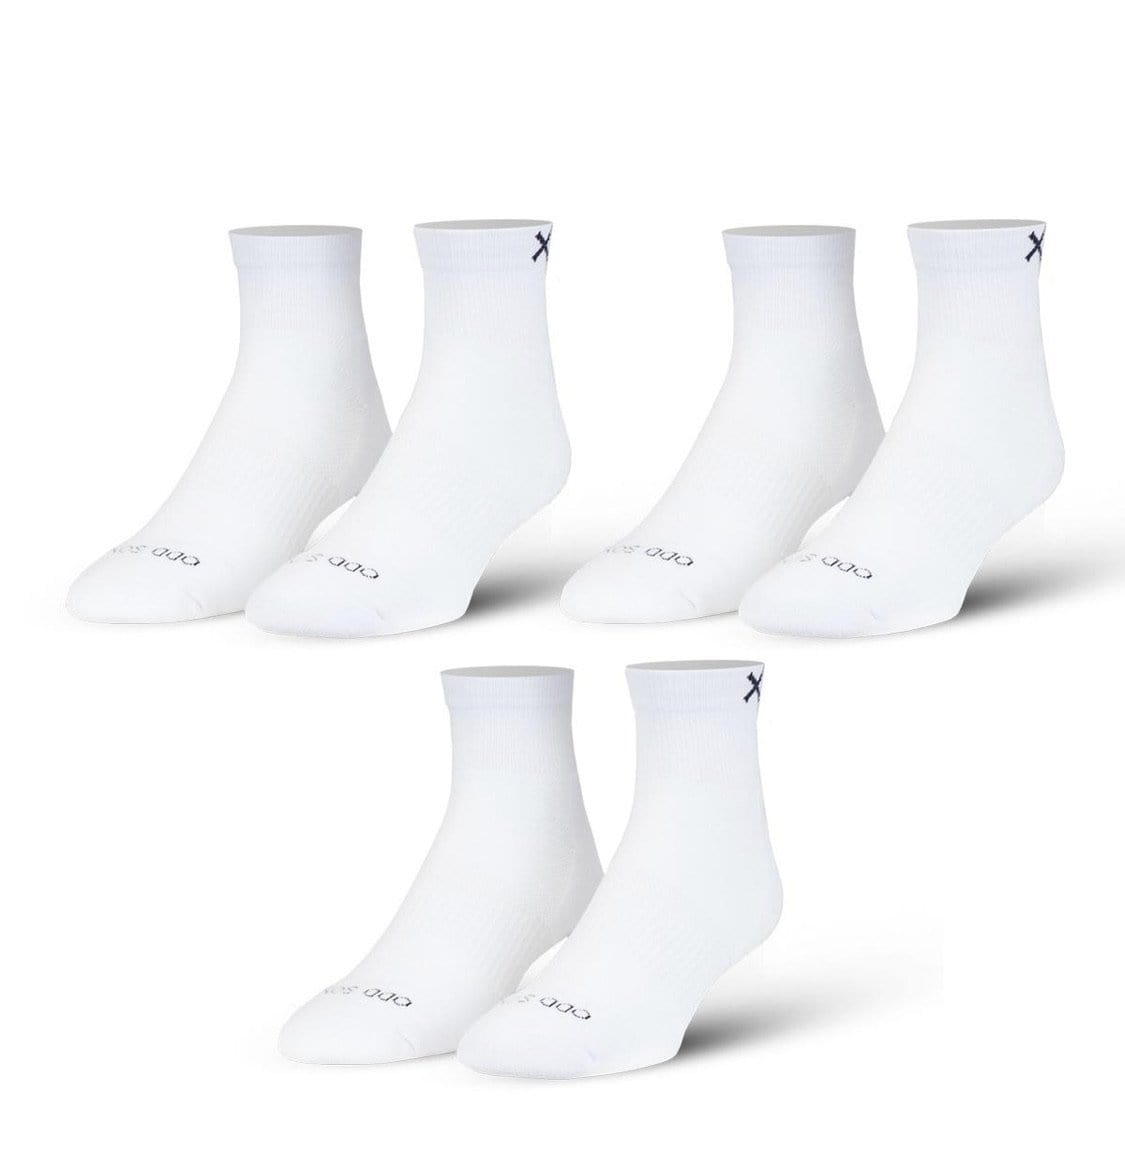 Odd Sox Socks 6-12 / White Basix Quarter White (3 Pack) (Cotton)